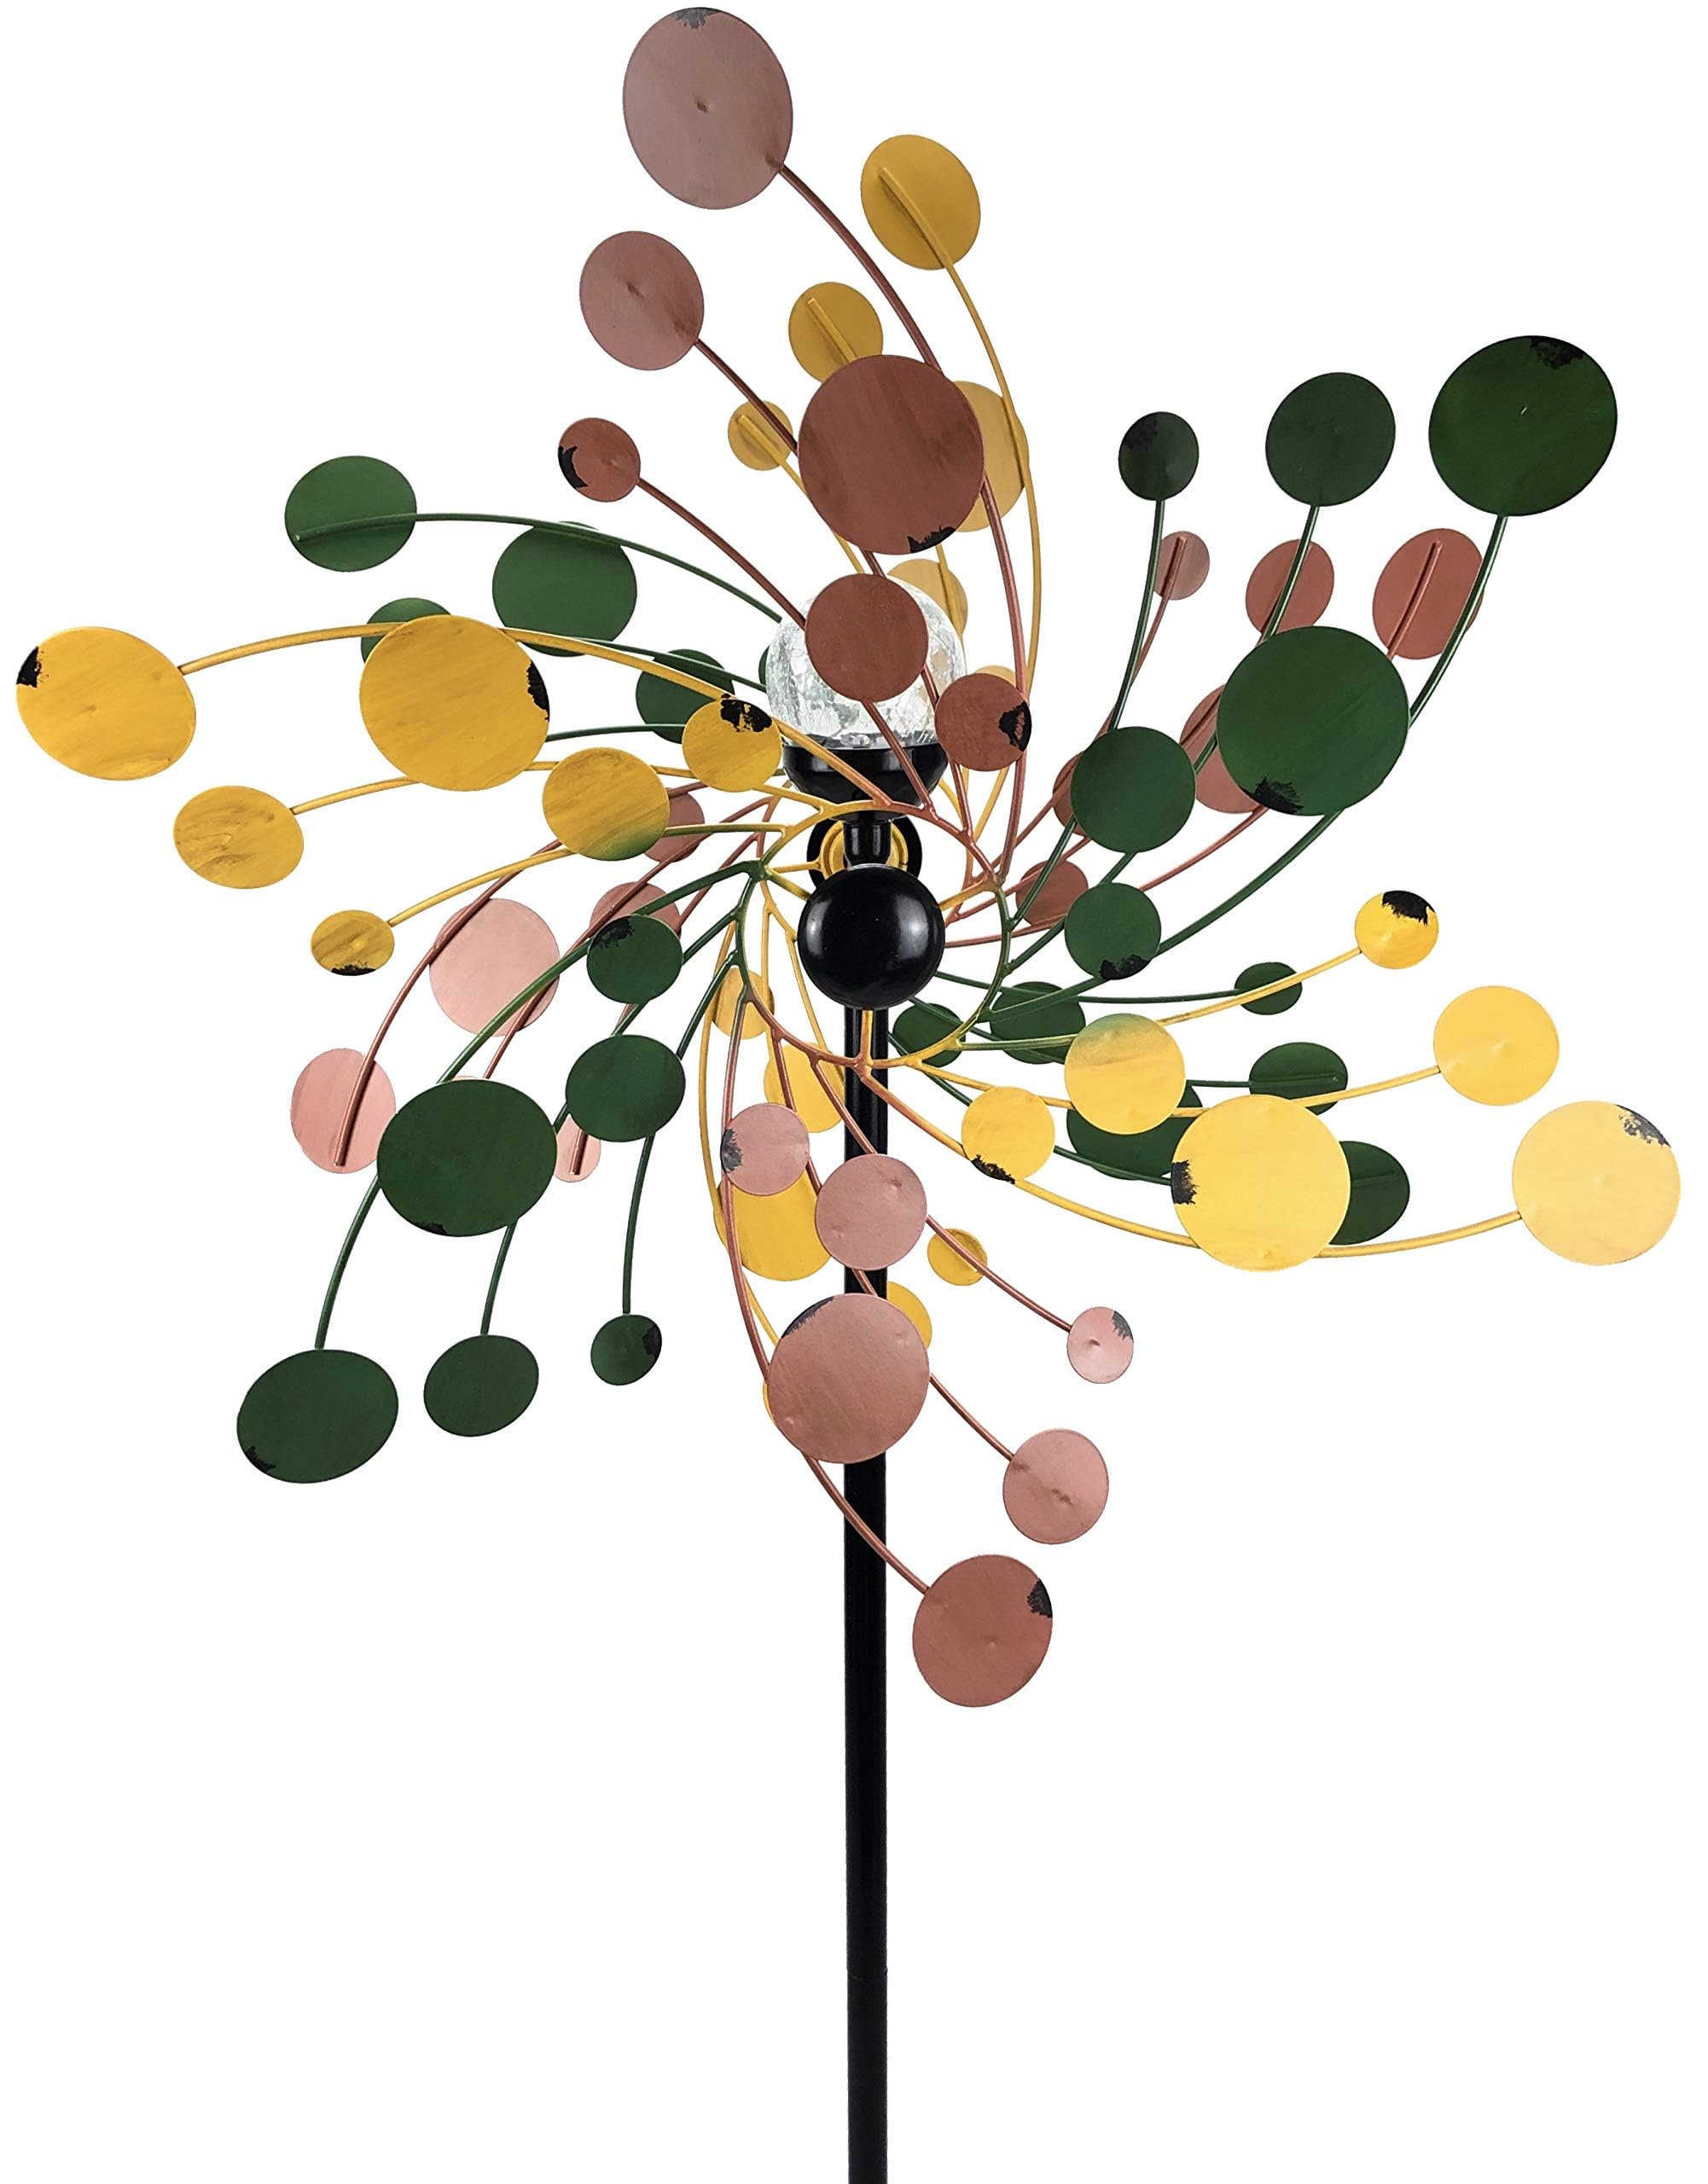 Metall Windrad 'Vintage' - Windspiel Windmühle für den Garten - wetterfest und standfest - mit besten Kugellagern - mit Dreibein und wahlweise Solarlampe - Höhe 185 cm